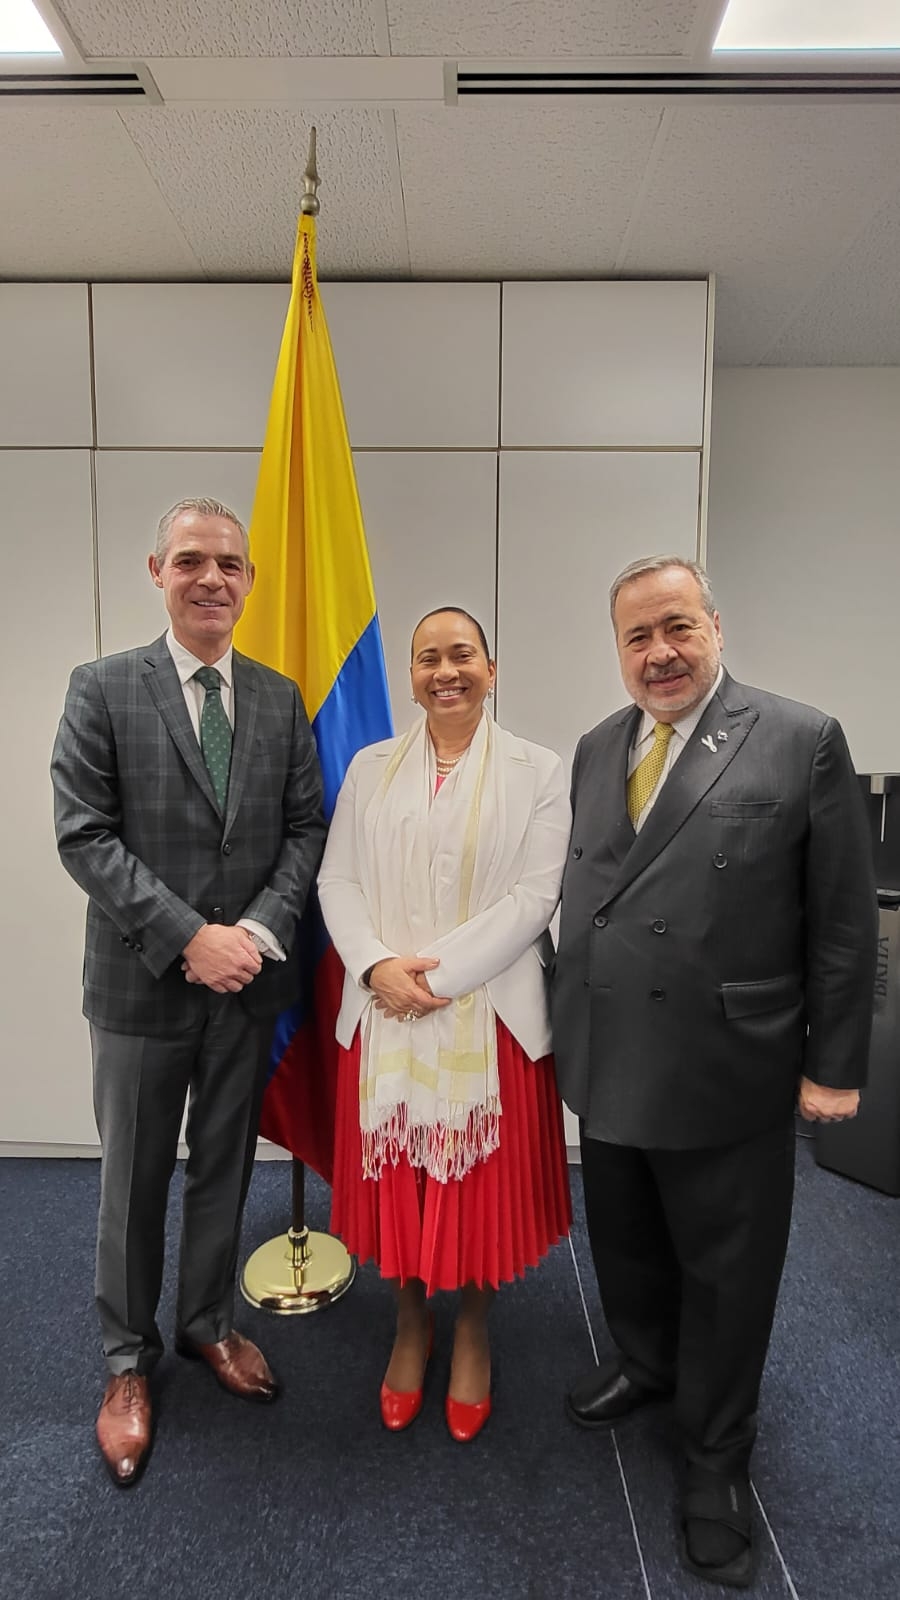 Gobierno colombiano asume la Presidencia del Foro Mundial sobre Migración y Desarrollo